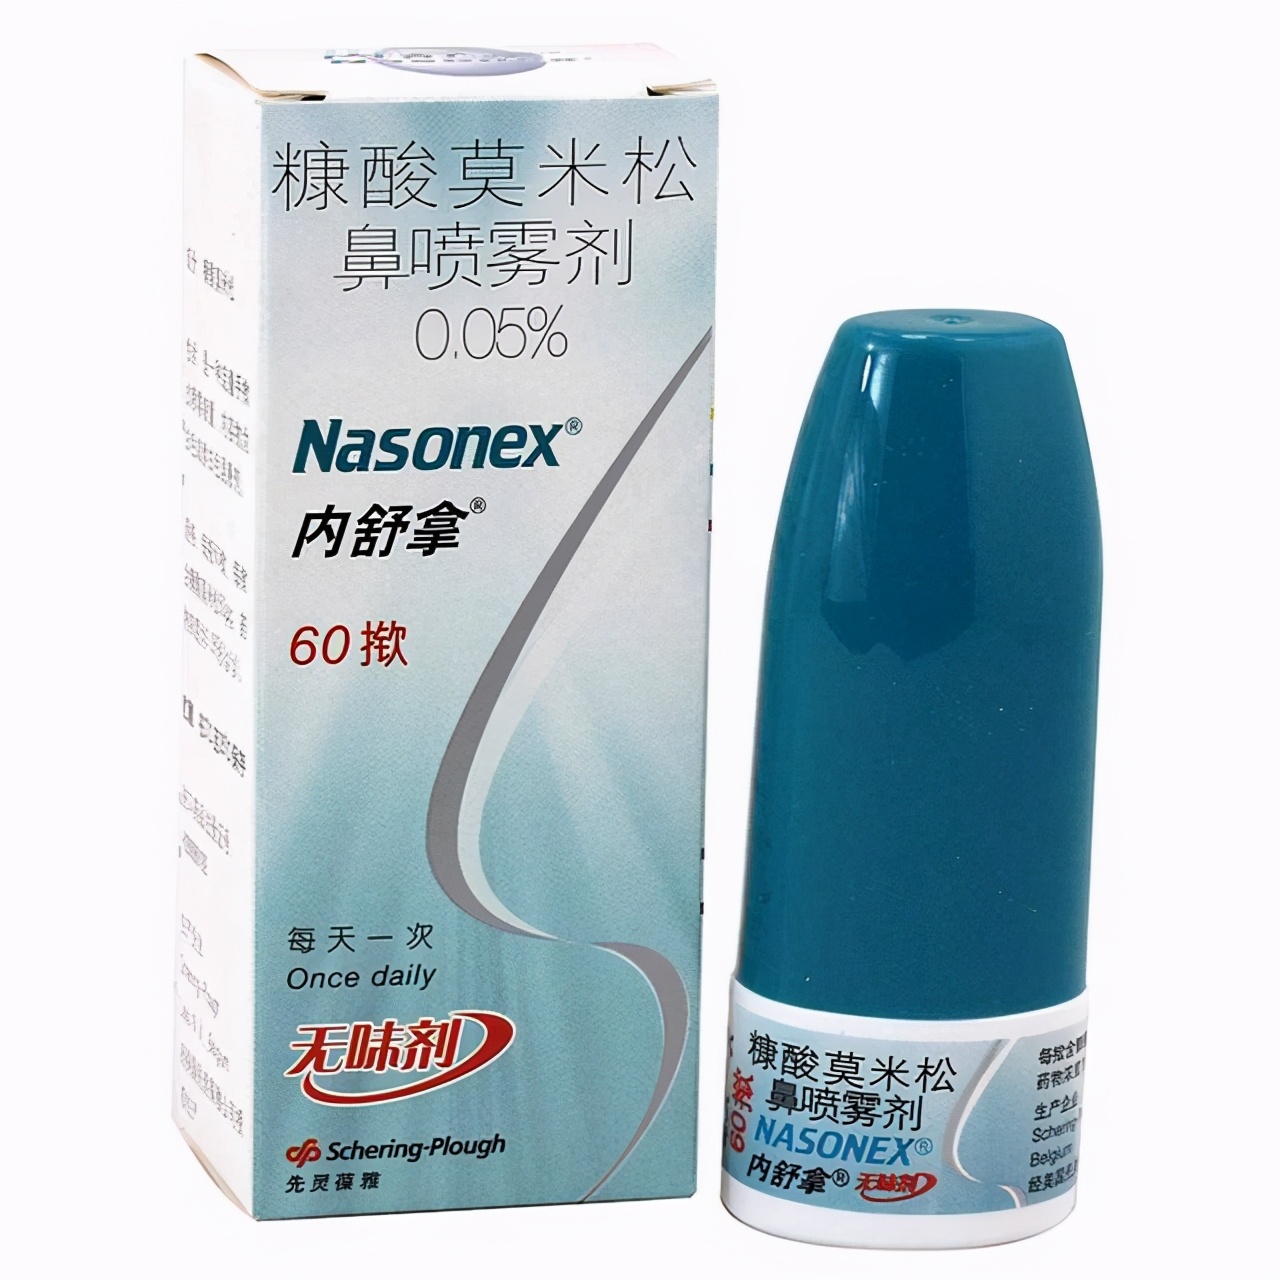 治疗过敏性鼻炎的鼻喷激素,哪种更好?